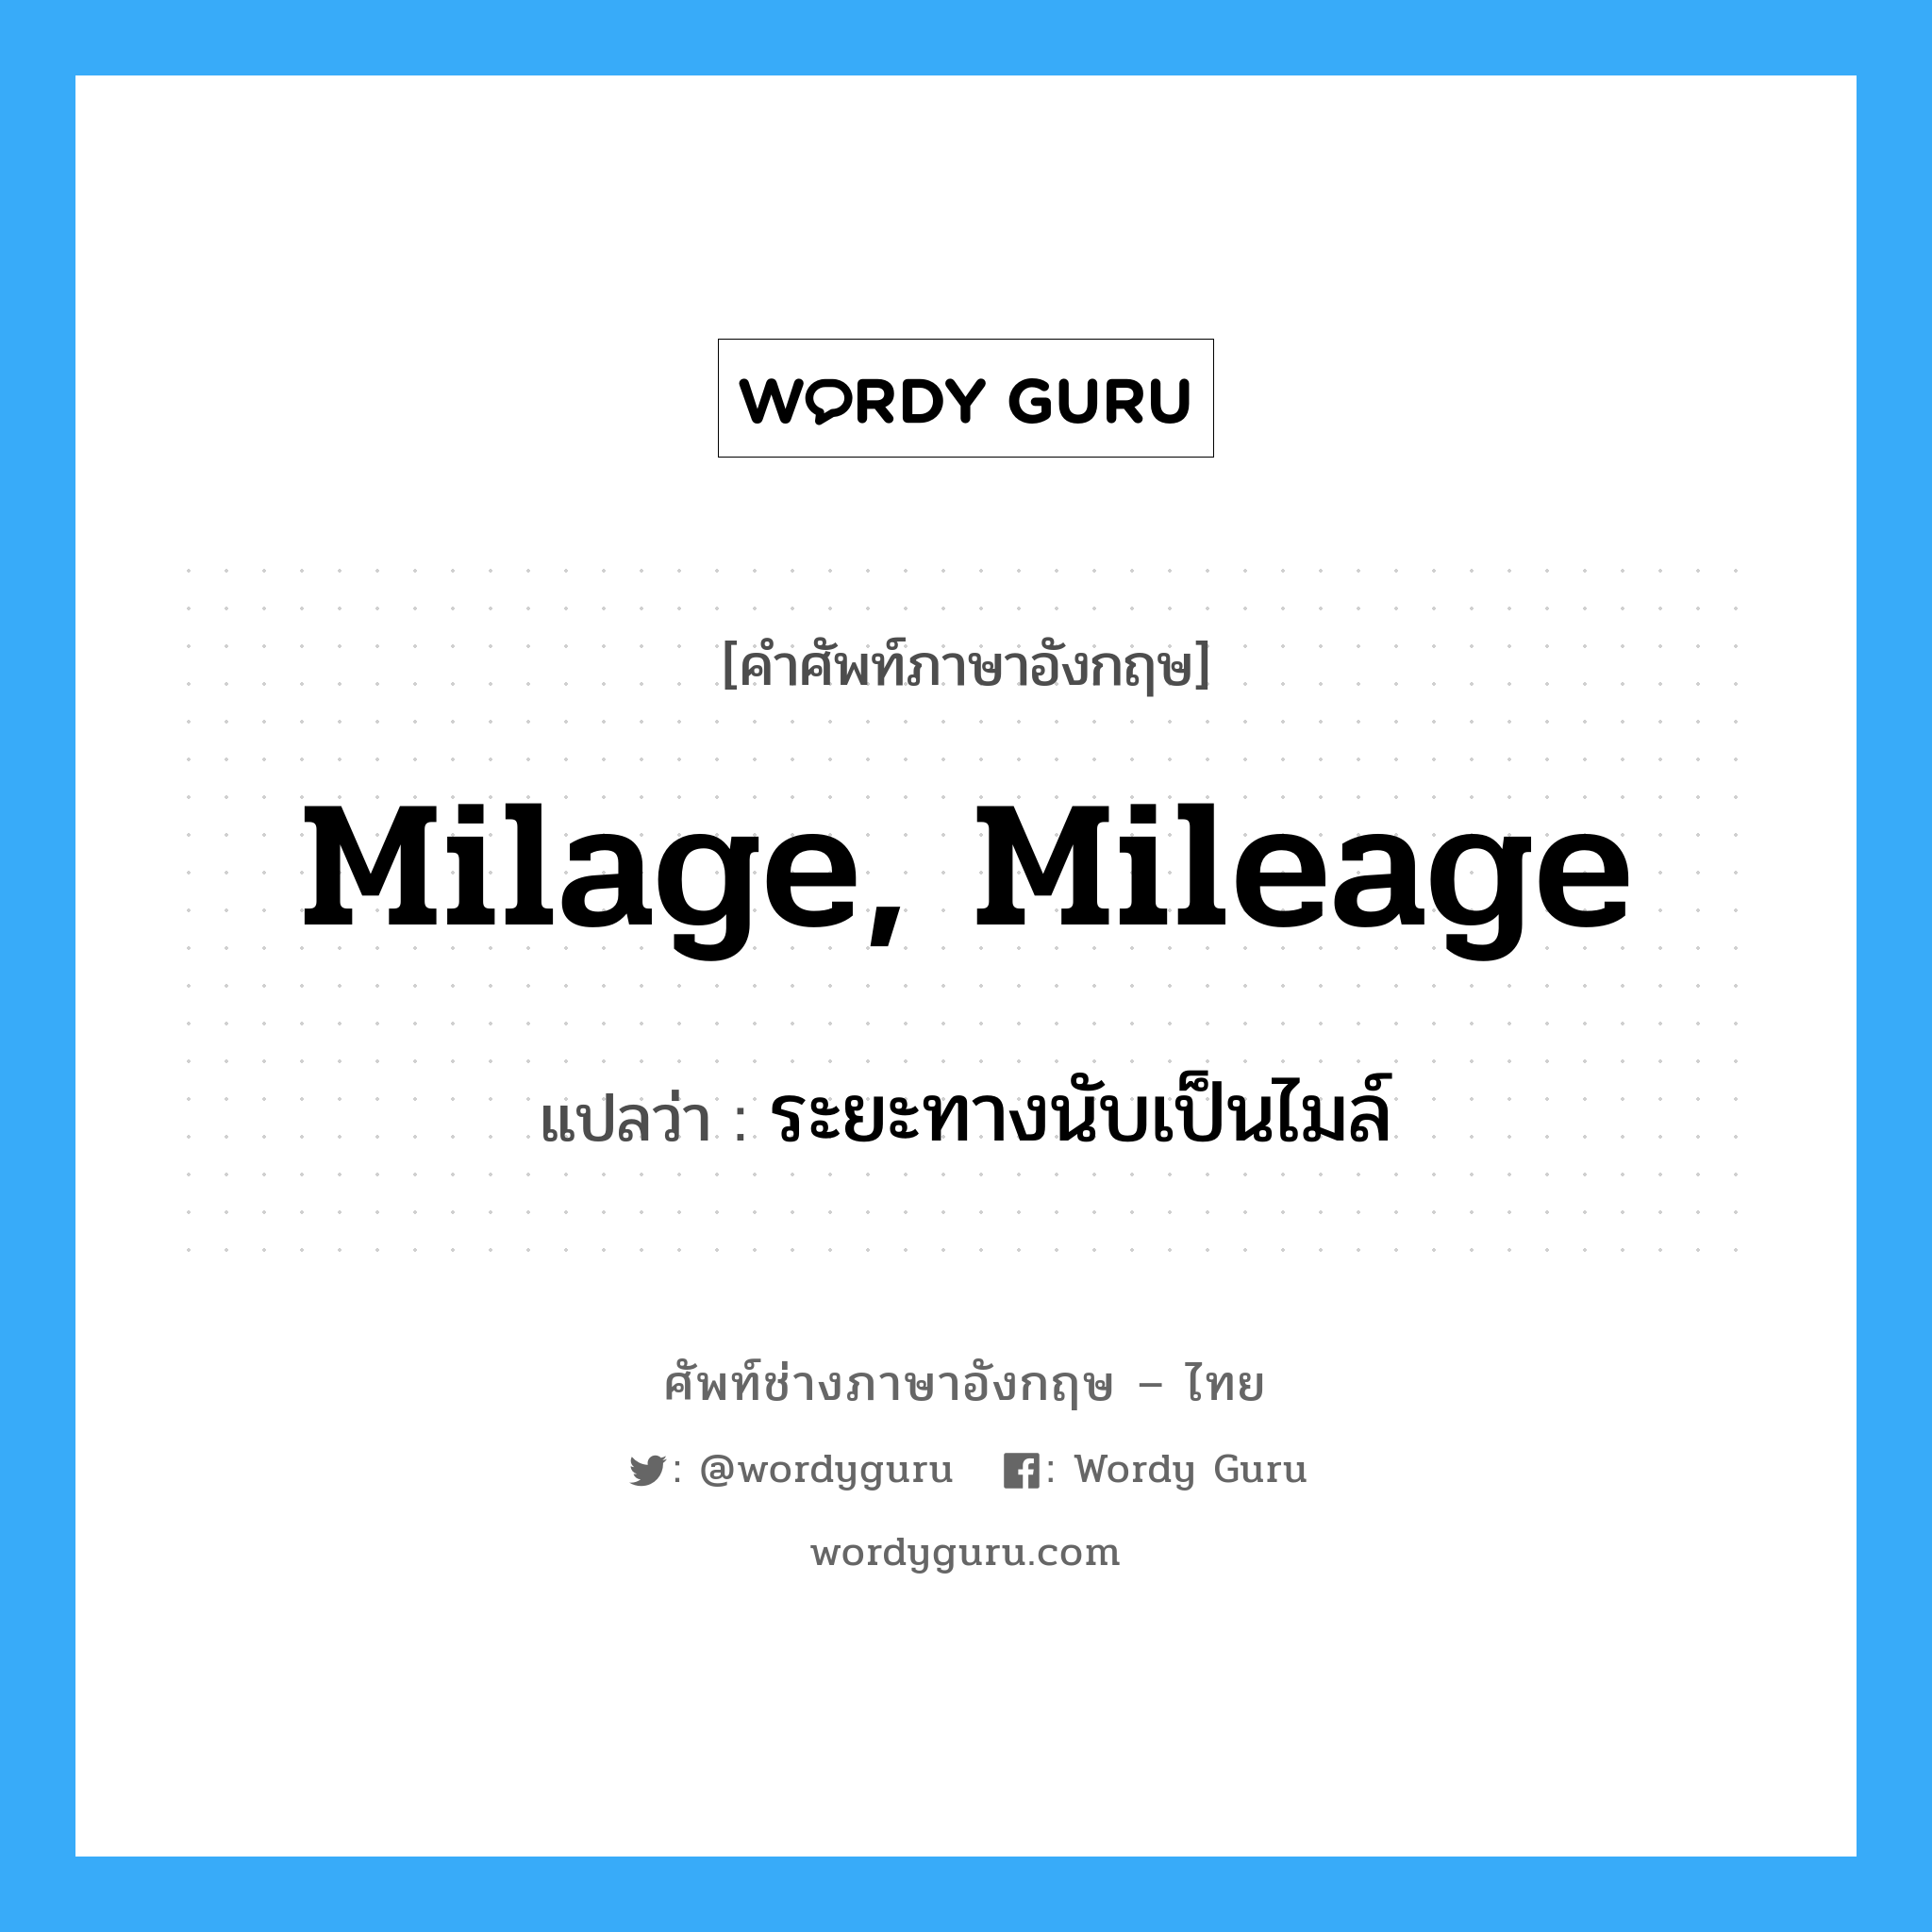 milage, mileage แปลว่า?, คำศัพท์ช่างภาษาอังกฤษ - ไทย milage, mileage คำศัพท์ภาษาอังกฤษ milage, mileage แปลว่า ระยะทางนับเป็นไมล์